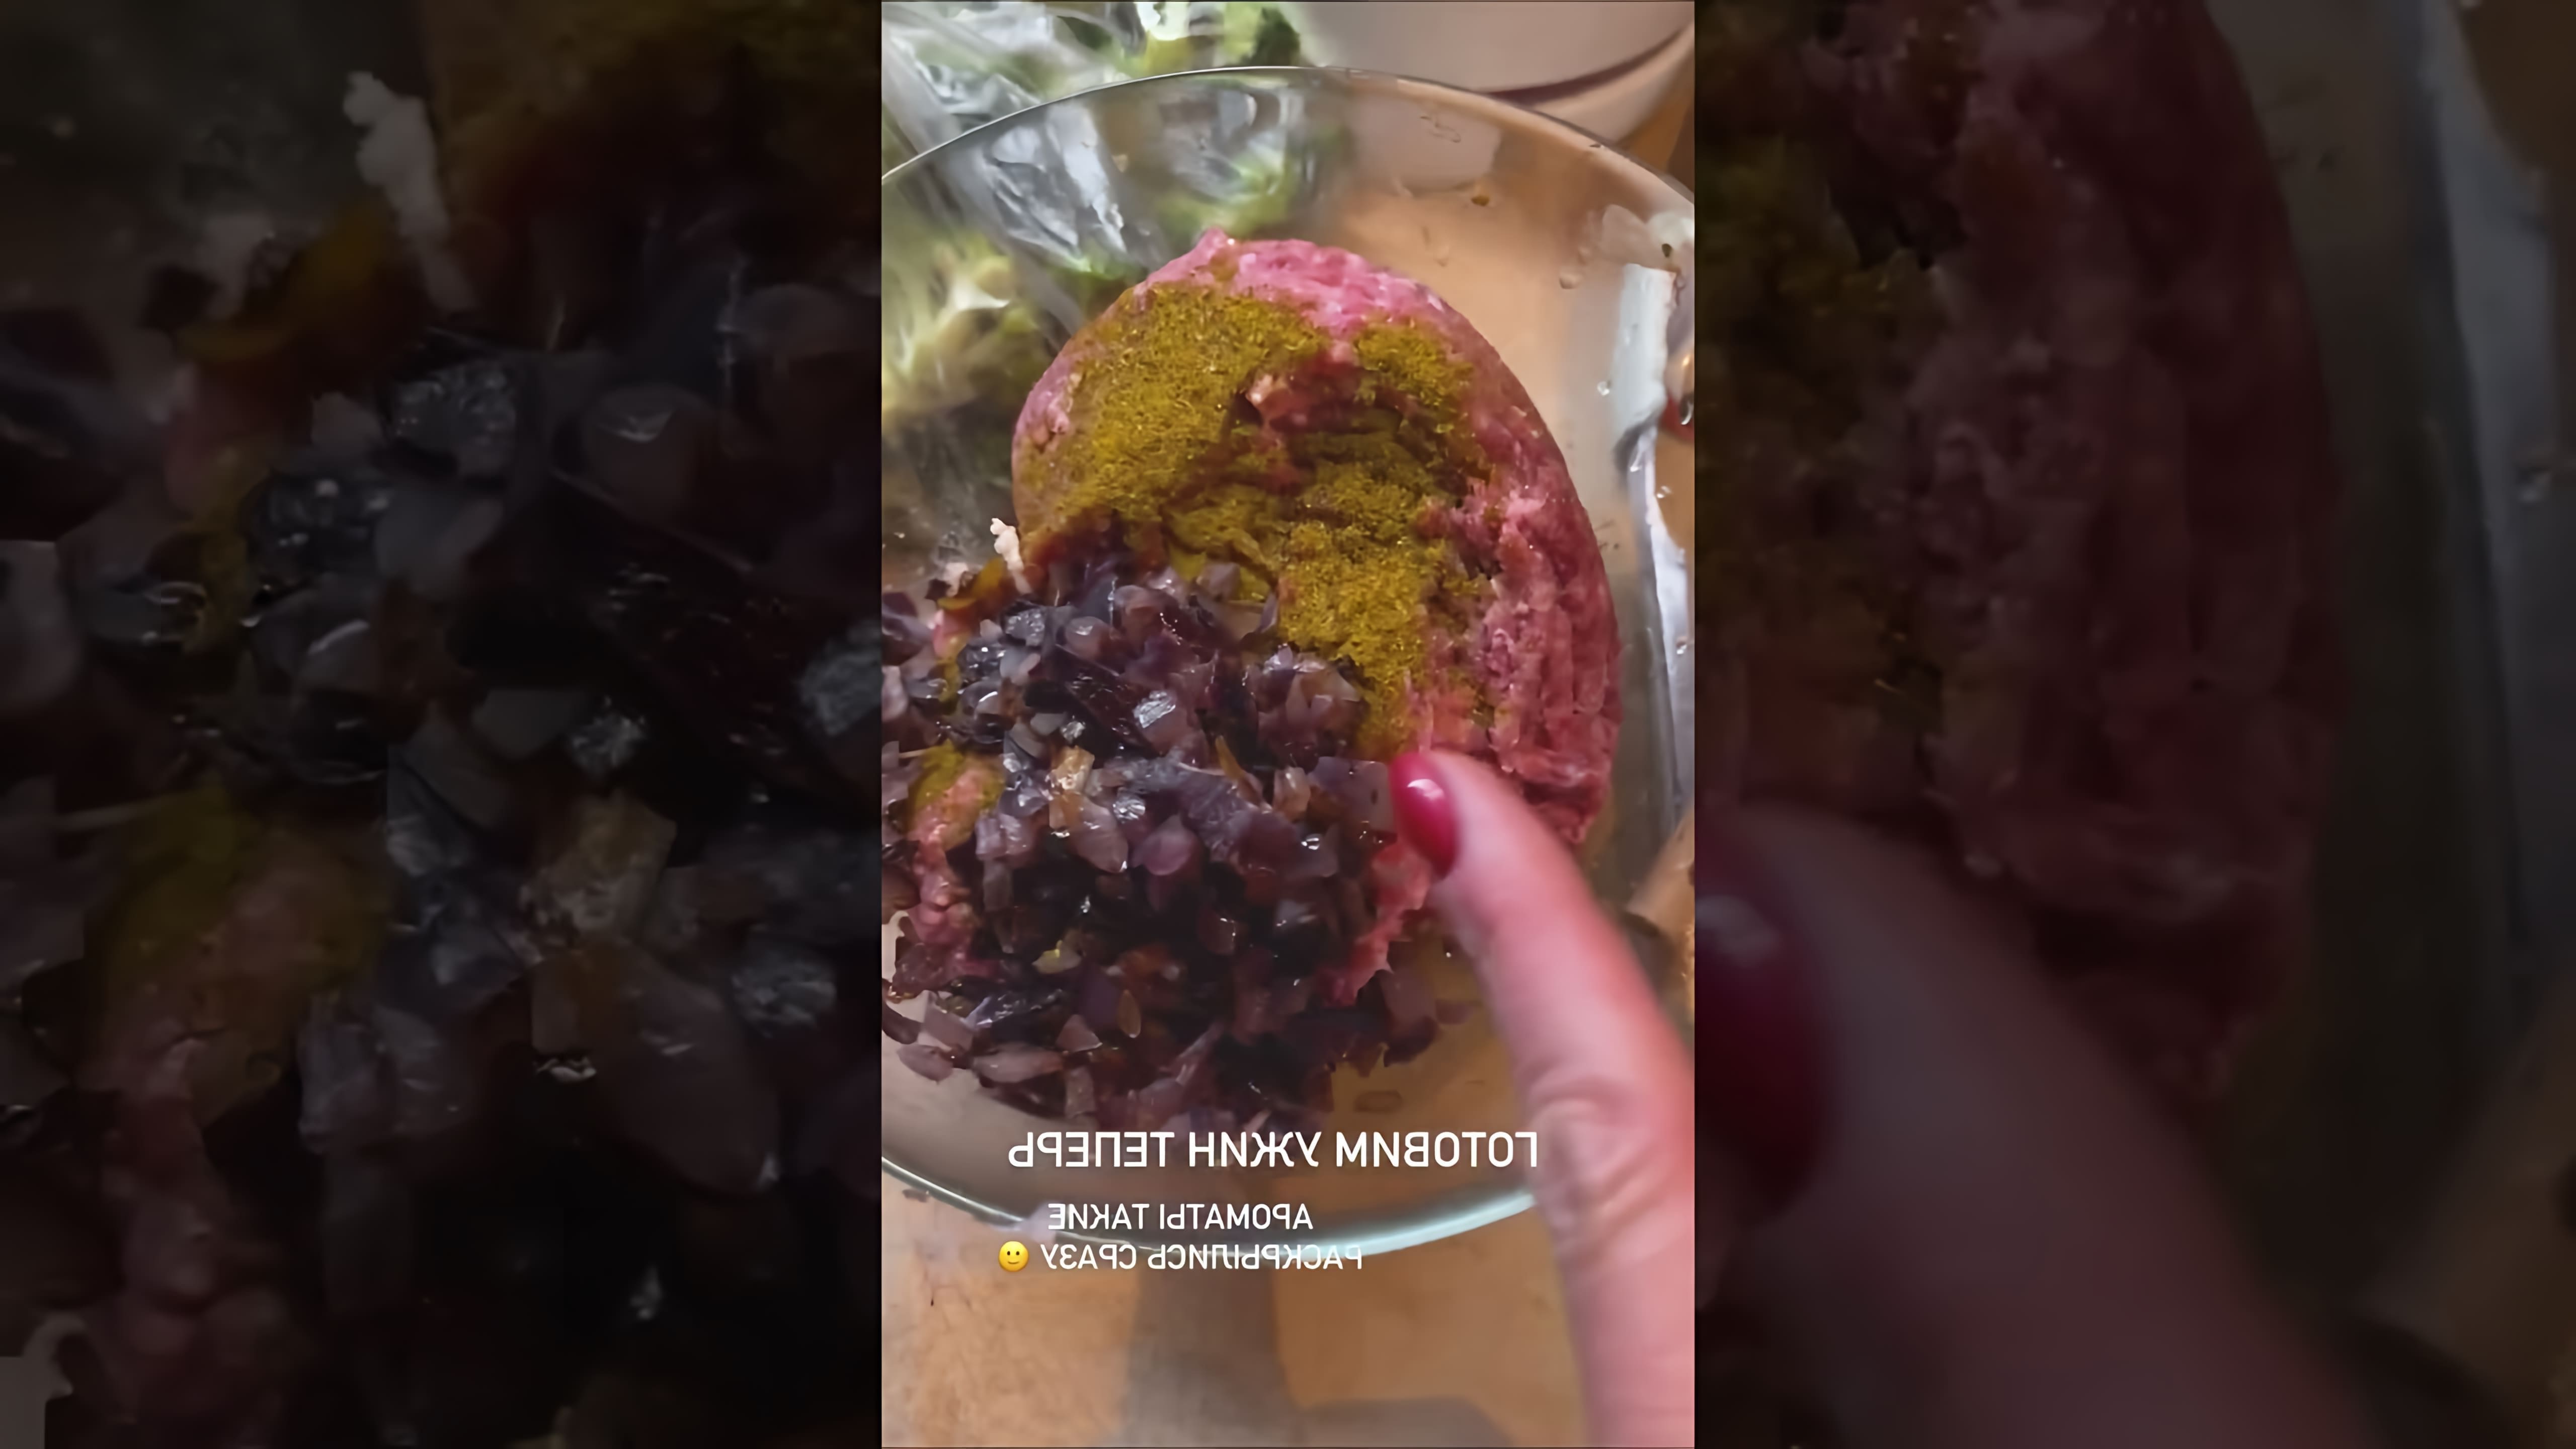 В этом видео демонстрируется процесс приготовления ужина из зраз с фаршем, хмели-сунели, чесноком, красным горячим луком и брокколи в качестве гарнира